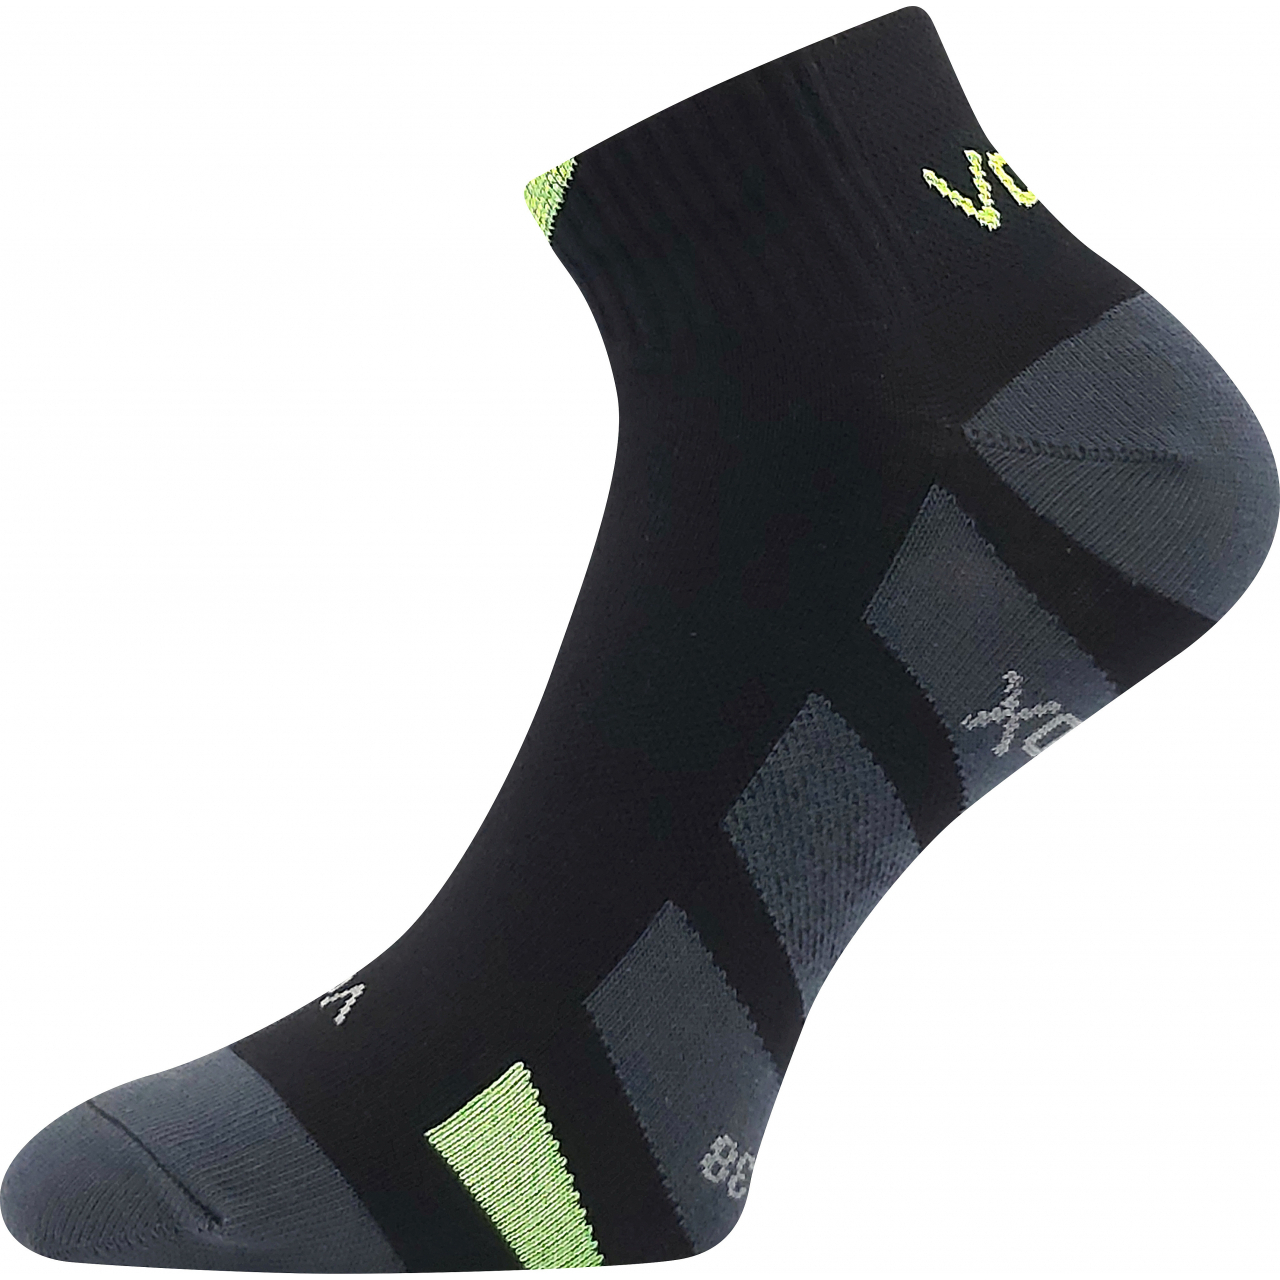 Ponožky unisex slabé Voxx Gastm - černé, 39-42